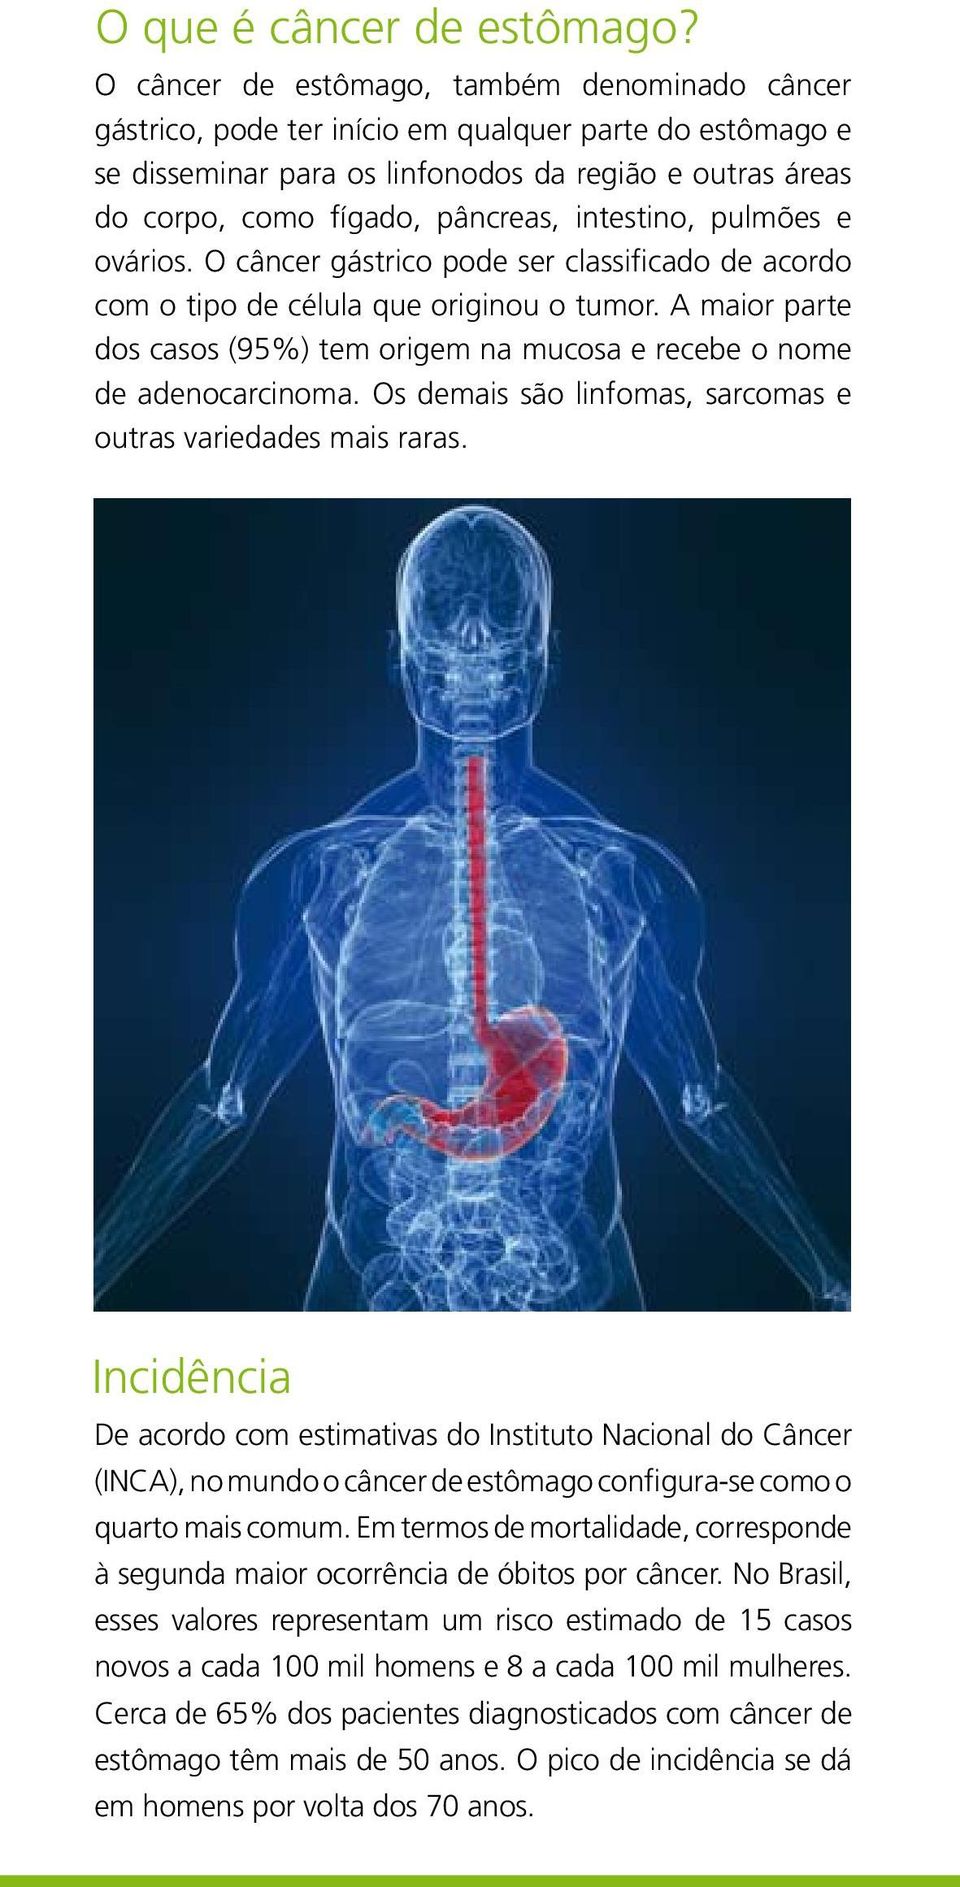 intestino, pulmões e ovários. O câncer gástrico pode ser classificado de acordo com o tipo de célula que originou o tumor.